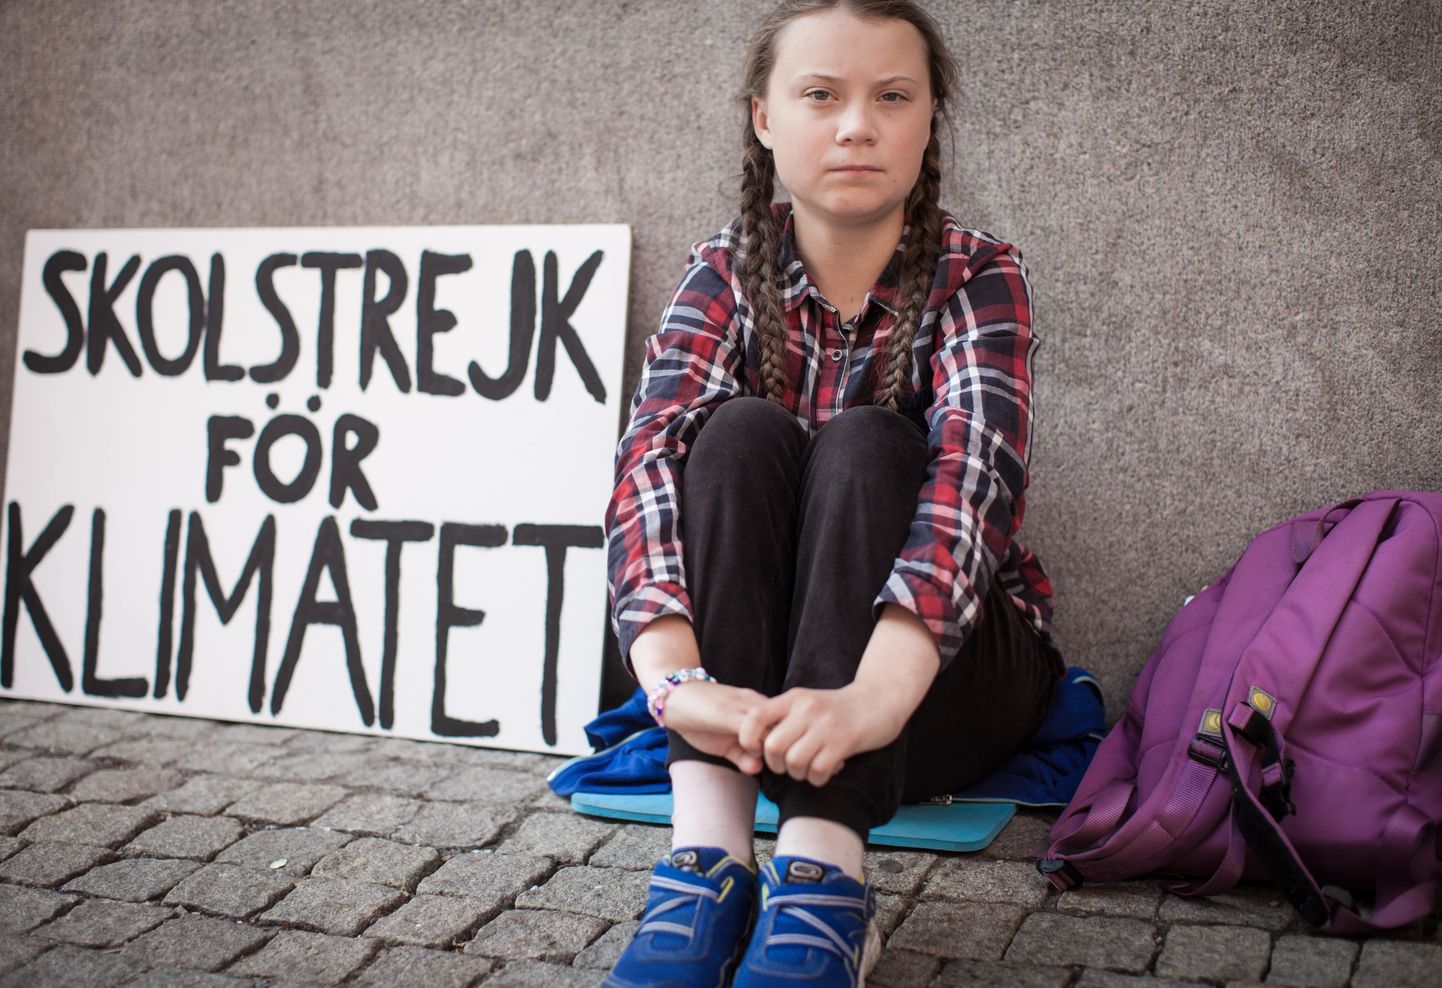 Keskkonnaktivist Greta Thunberg sai oma filmi.